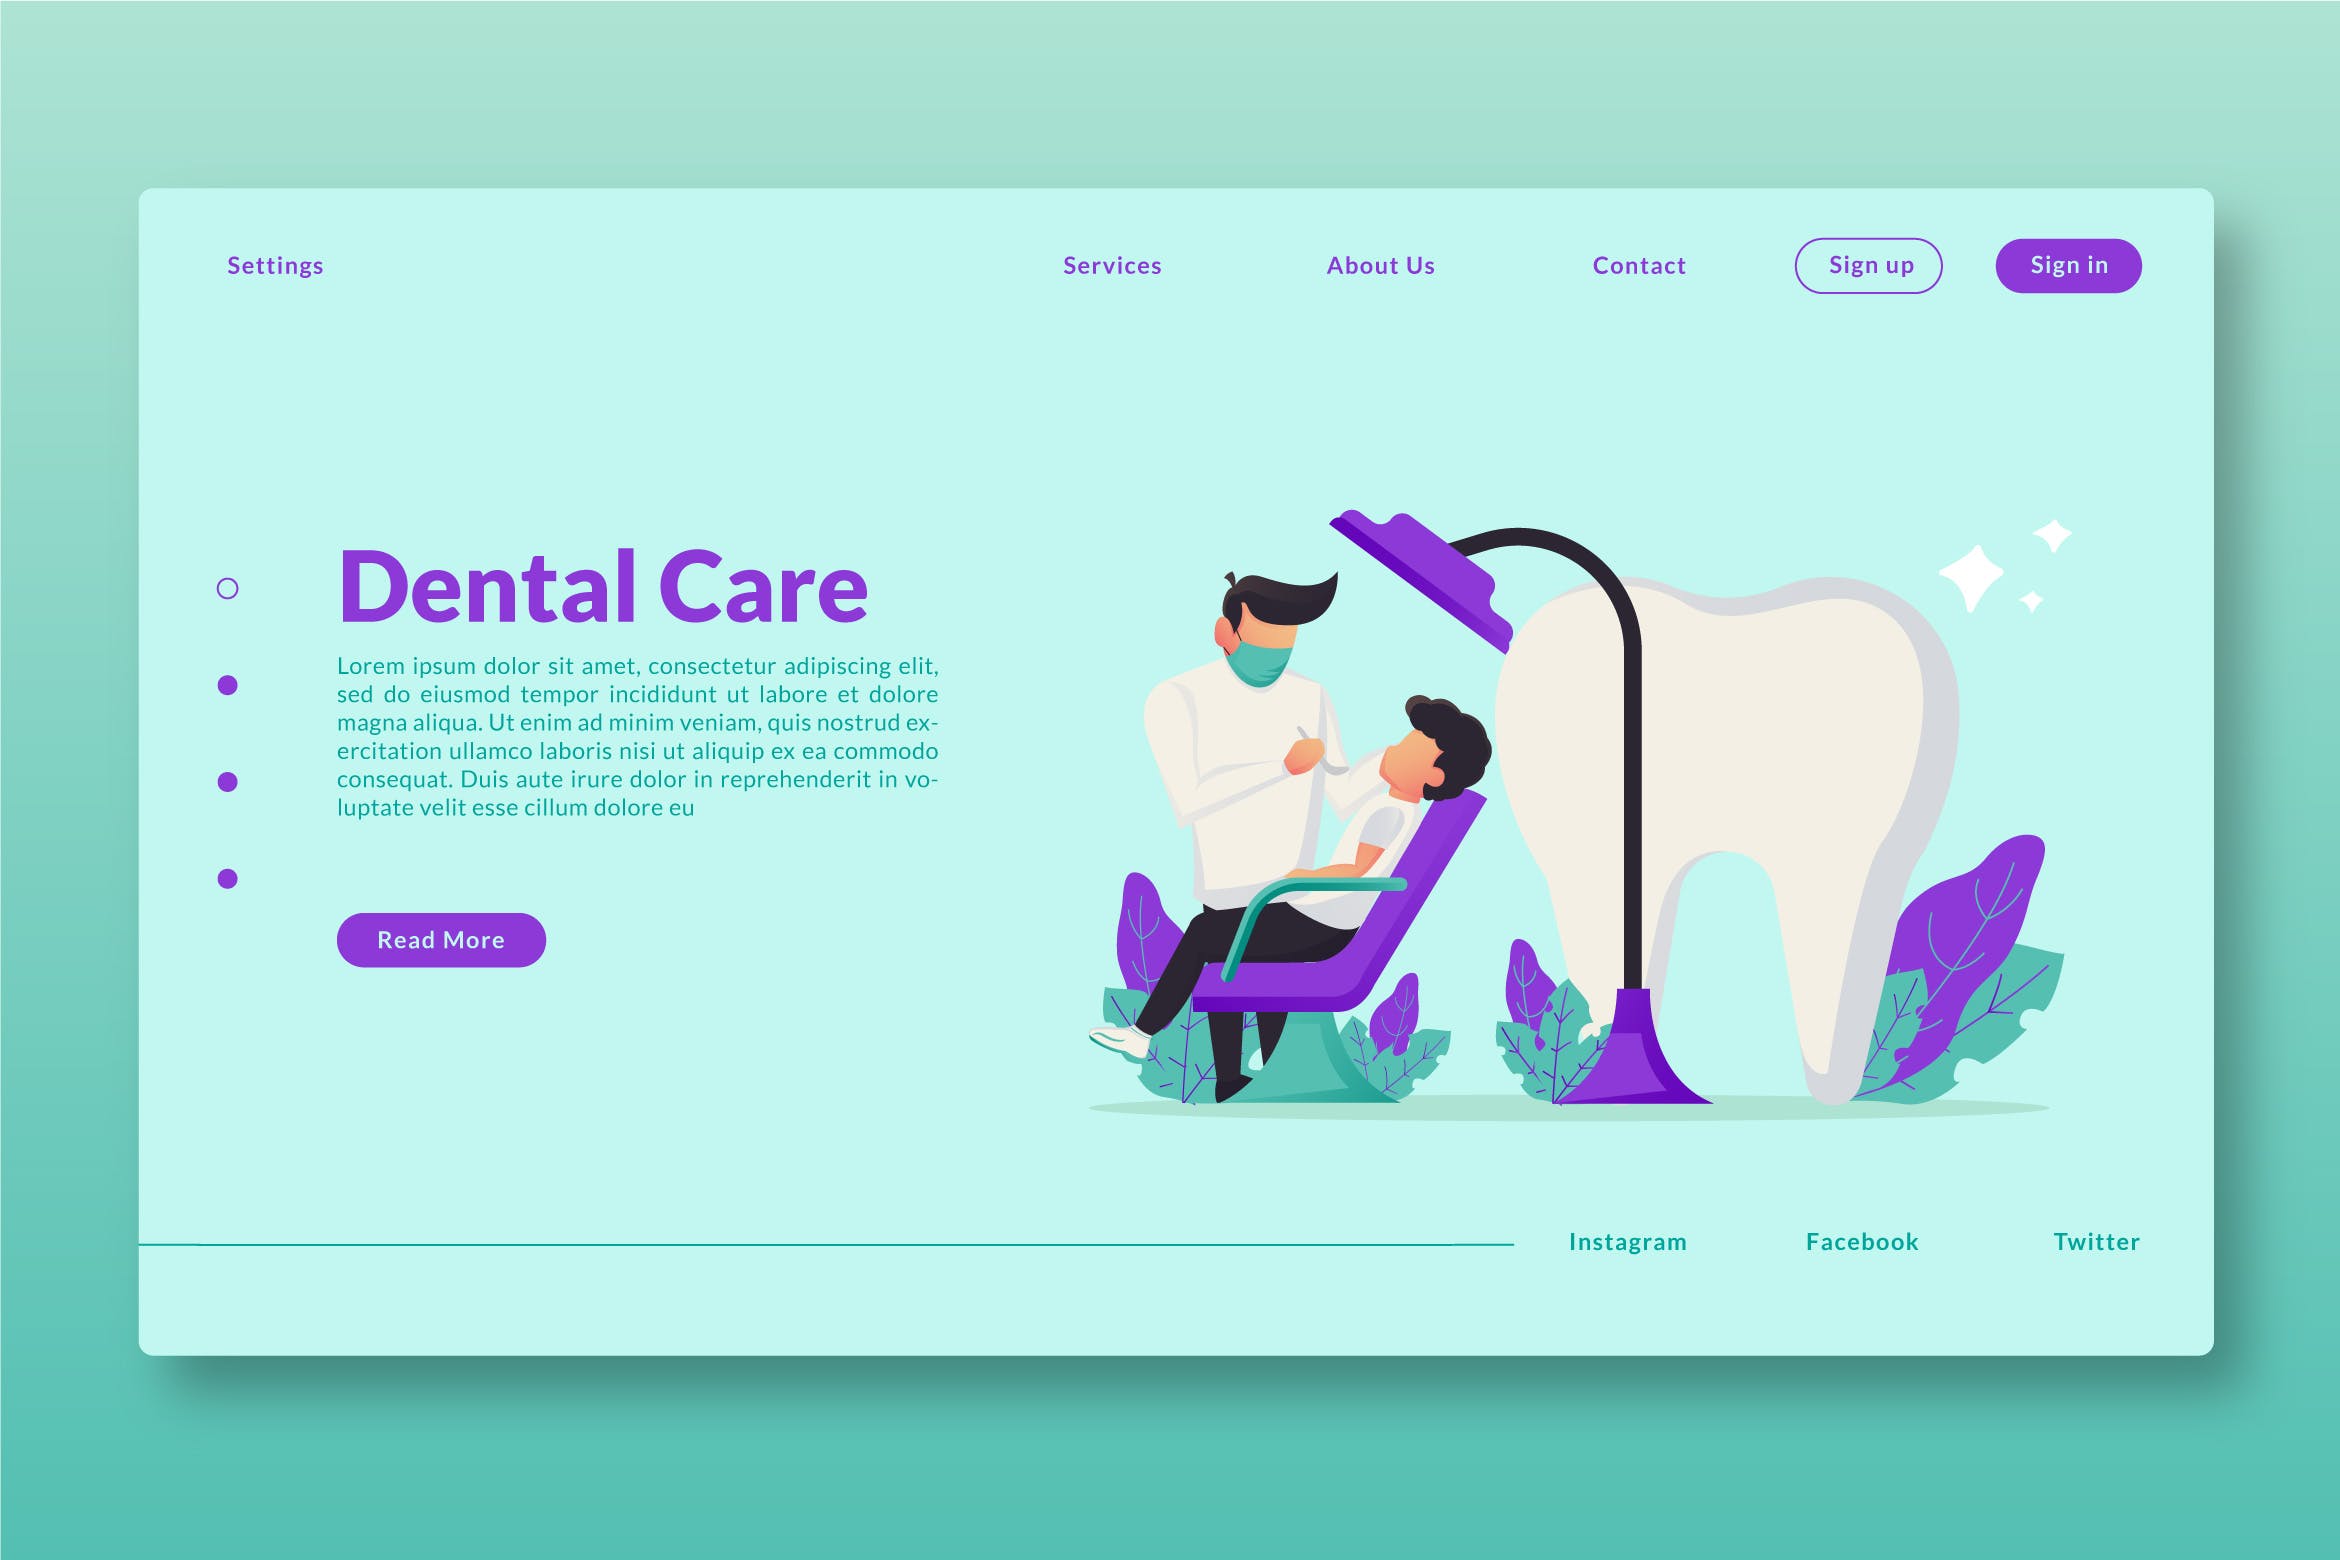 牙科保健网站设计矢量插画素材 Dental Care – Web Header & Landing Page GR插图